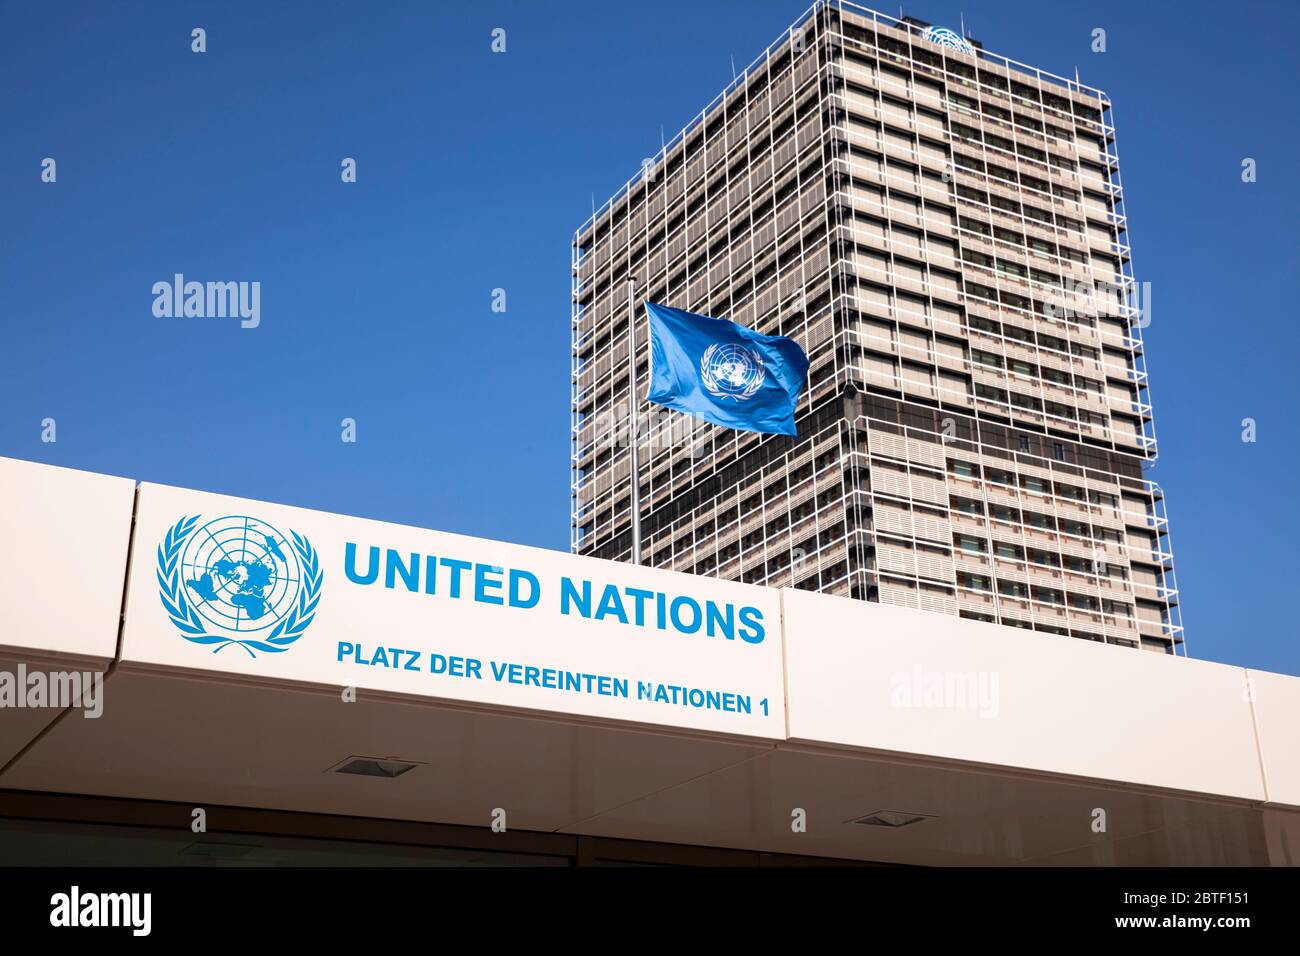 Ingresso al Campus ONU con l'edificio degli uffici Tall Eugen, ospita diverse organizzazioni delle Nazioni Unite, Bonn, Nord Reno-Westfalia, Germania. Foto Stock